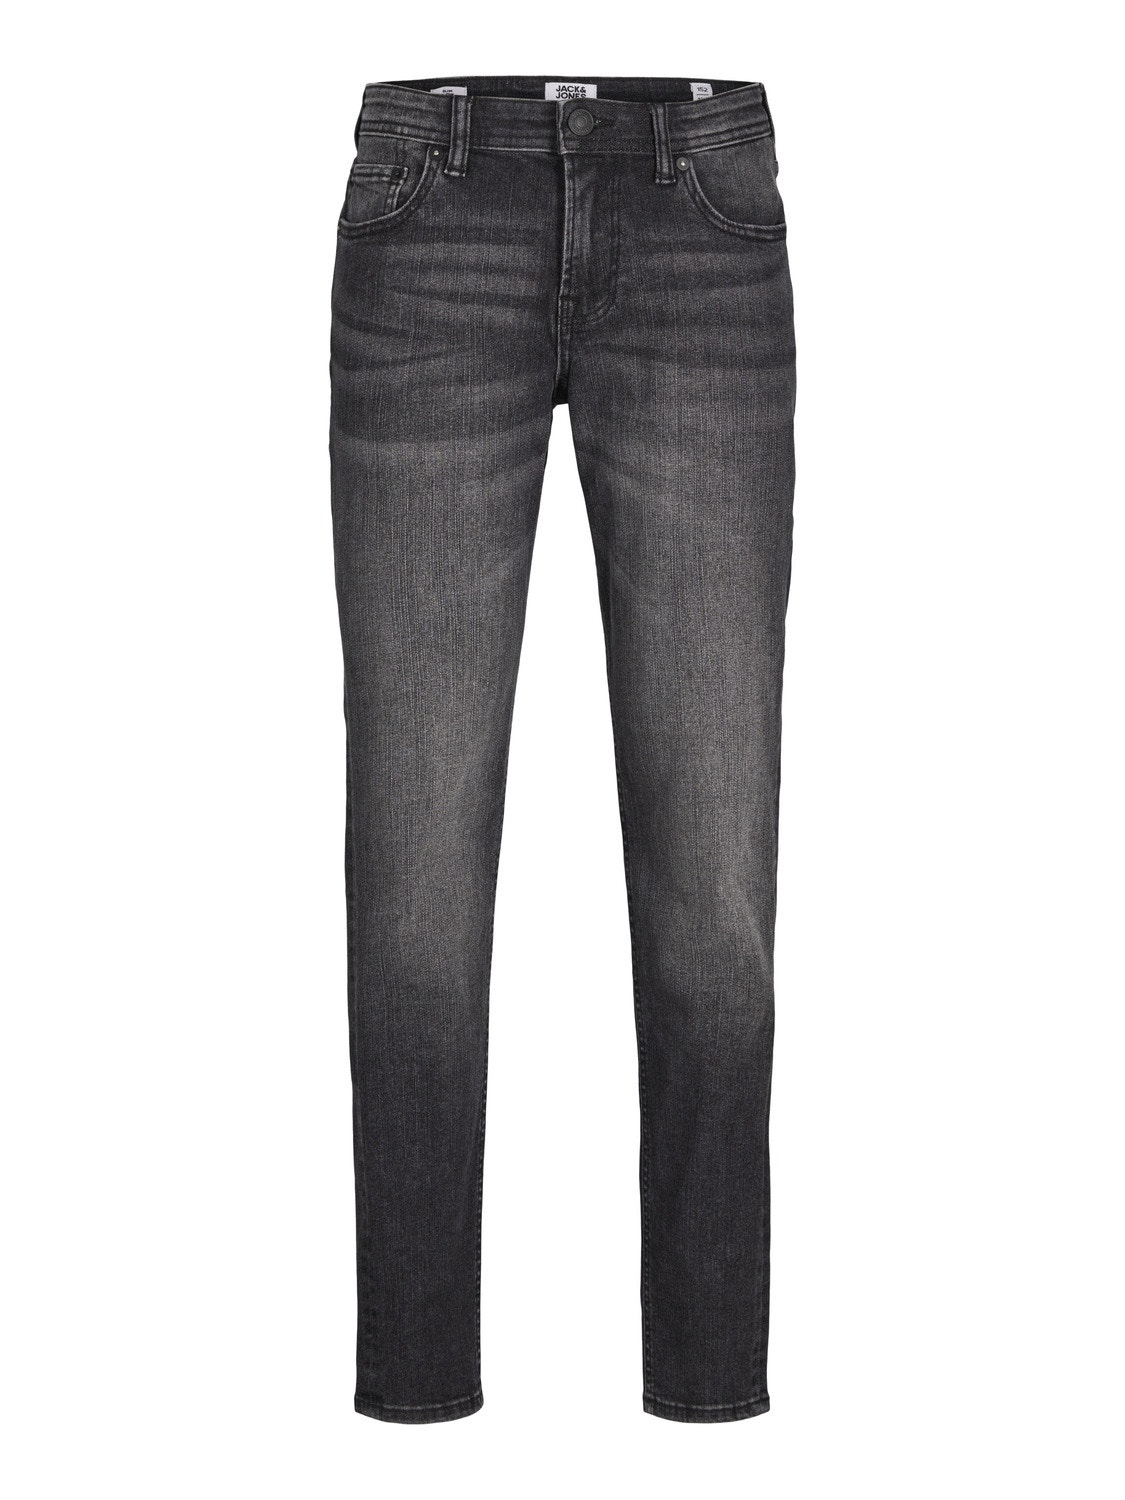 Jack & Jones JJIGLENN JJORIGINAL SQ 606 Slim Fit Jeans Für jungs -Black Denim - 12249012